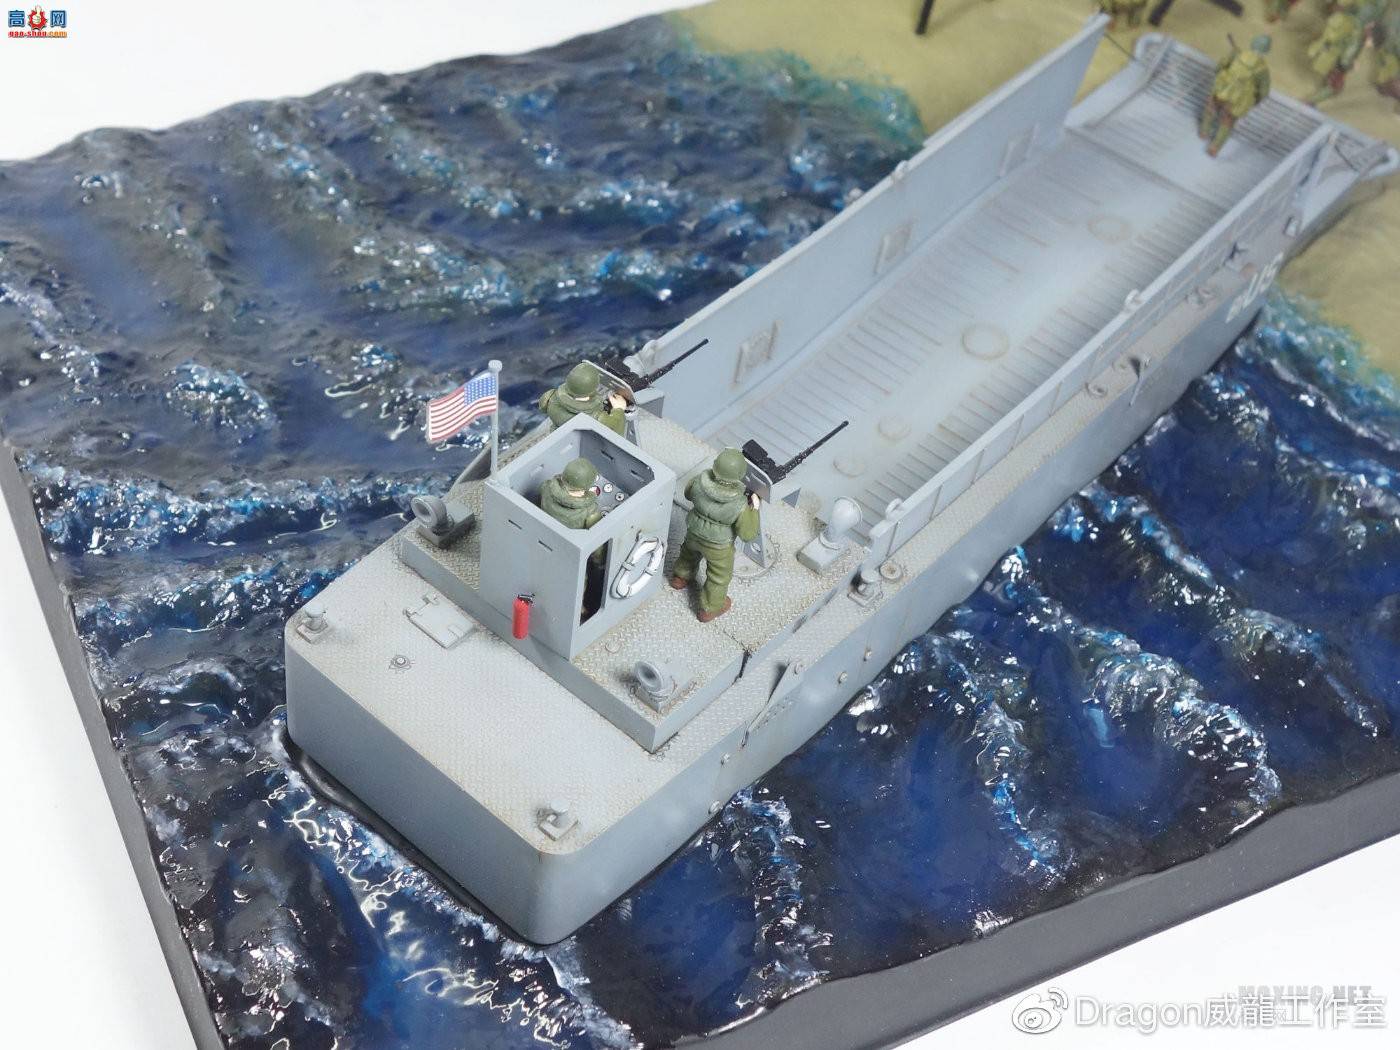 威龙模型 7257 1/72 美国LCM(3) 登陆艇 附第29步兵师 制作上色过程图分享